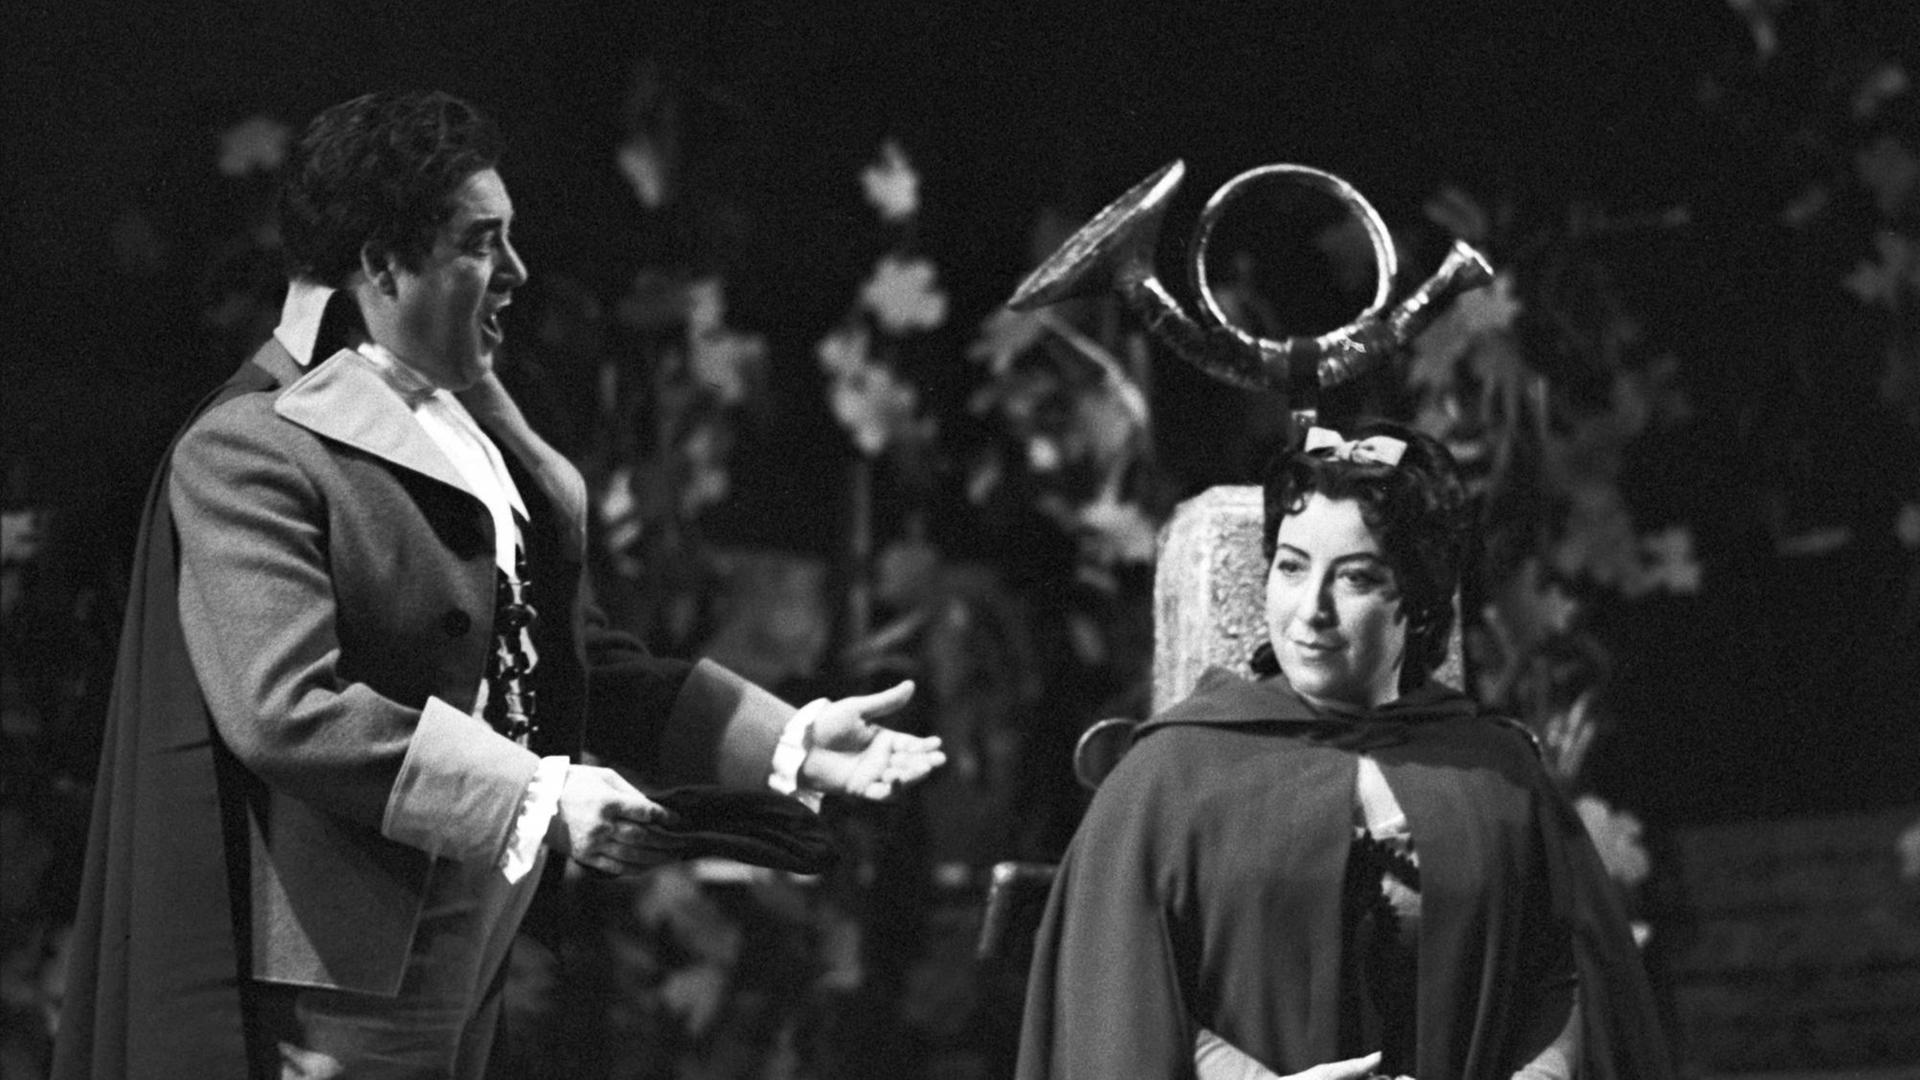 Die Sopranistin Anny Schlemm als Manon und der Tenor Josef Traxel als des Grieux stehen 1963 in Puccinis Oper 'Manon Lescaut' auf der Bühne